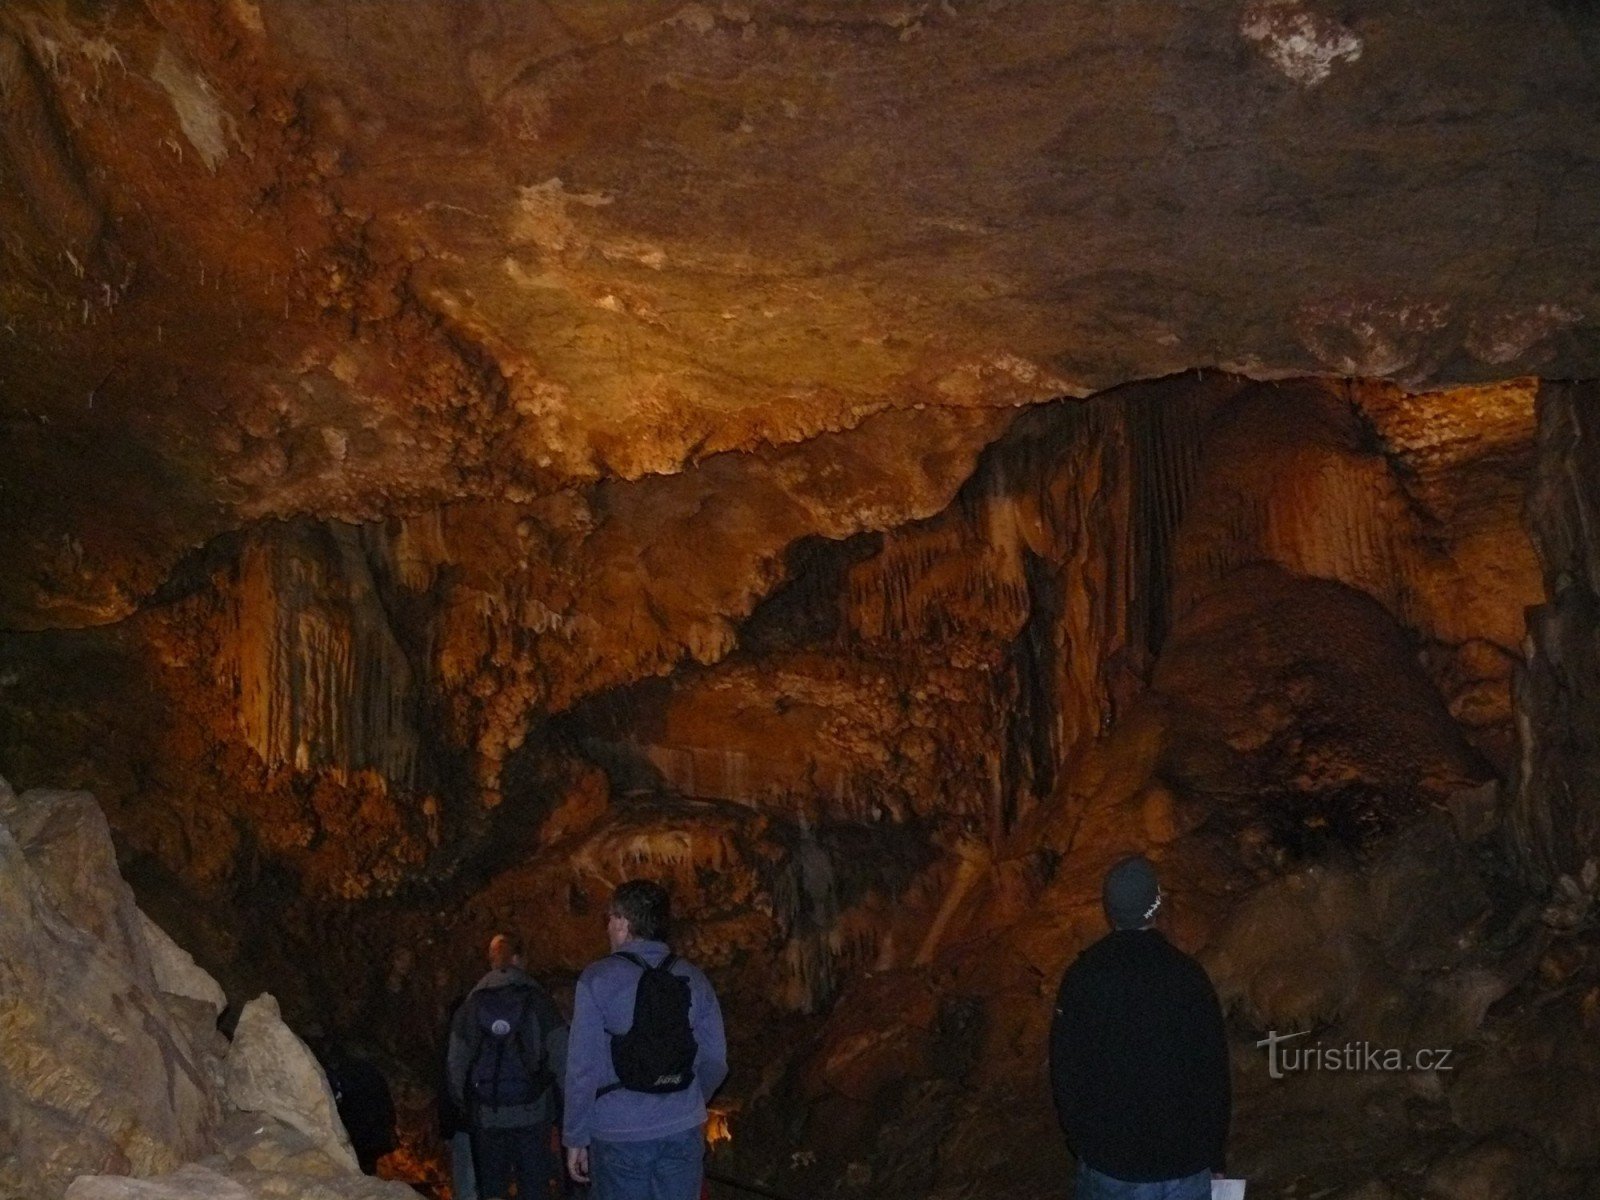 Σπήλαια Koněprusy